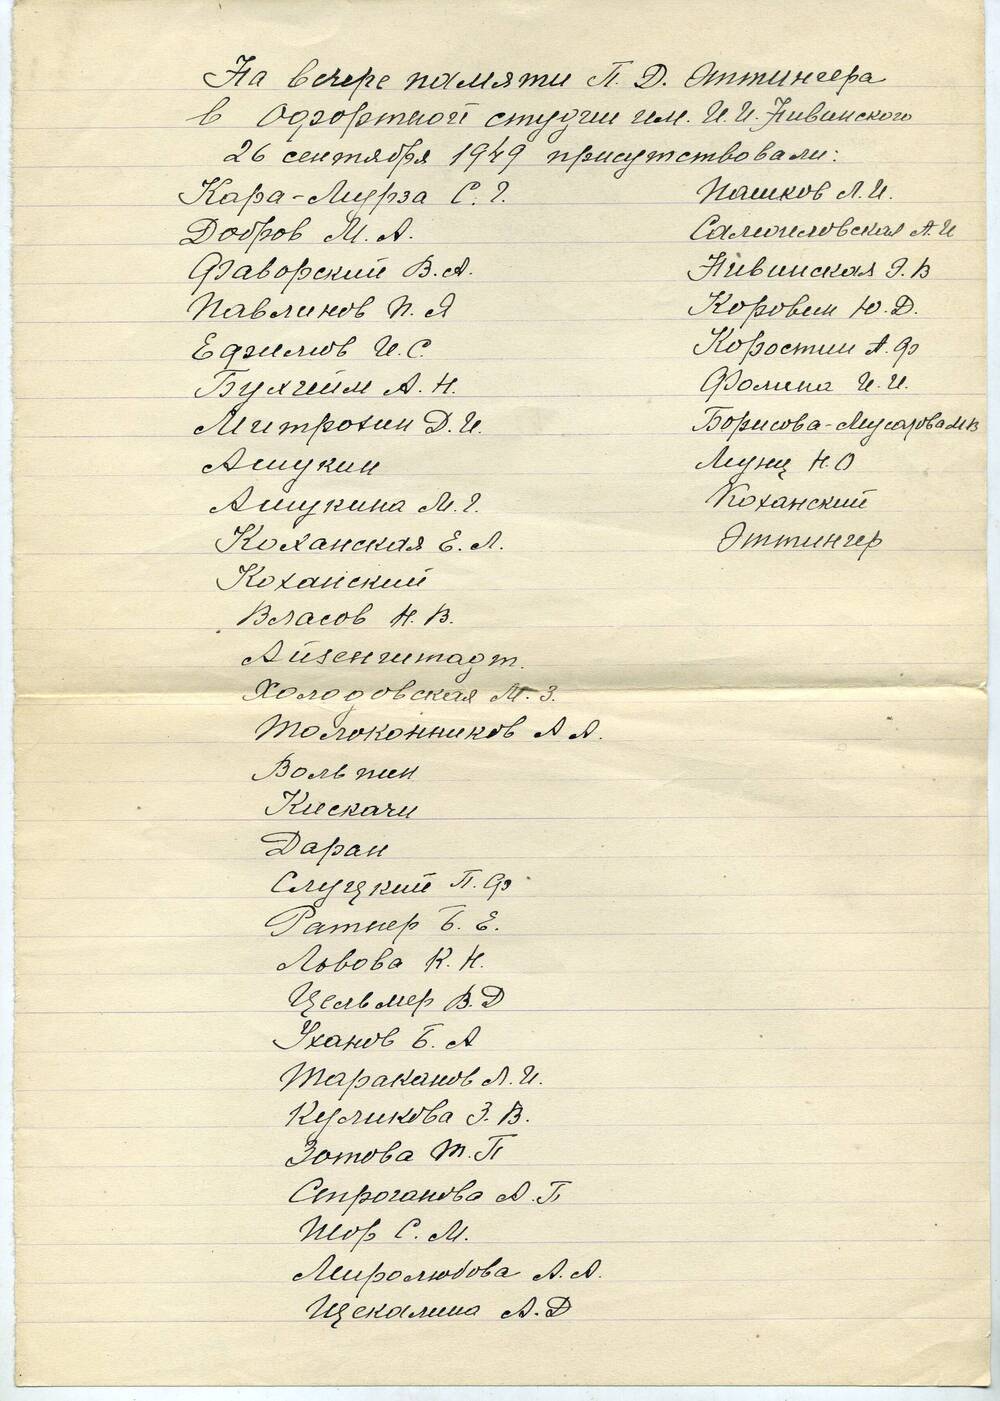 Рукописный лист с перечислением участников вечера памяти П.Д. Эттингера в Офортной студии им. И.И. Нивинского 26 сентября 1949 года